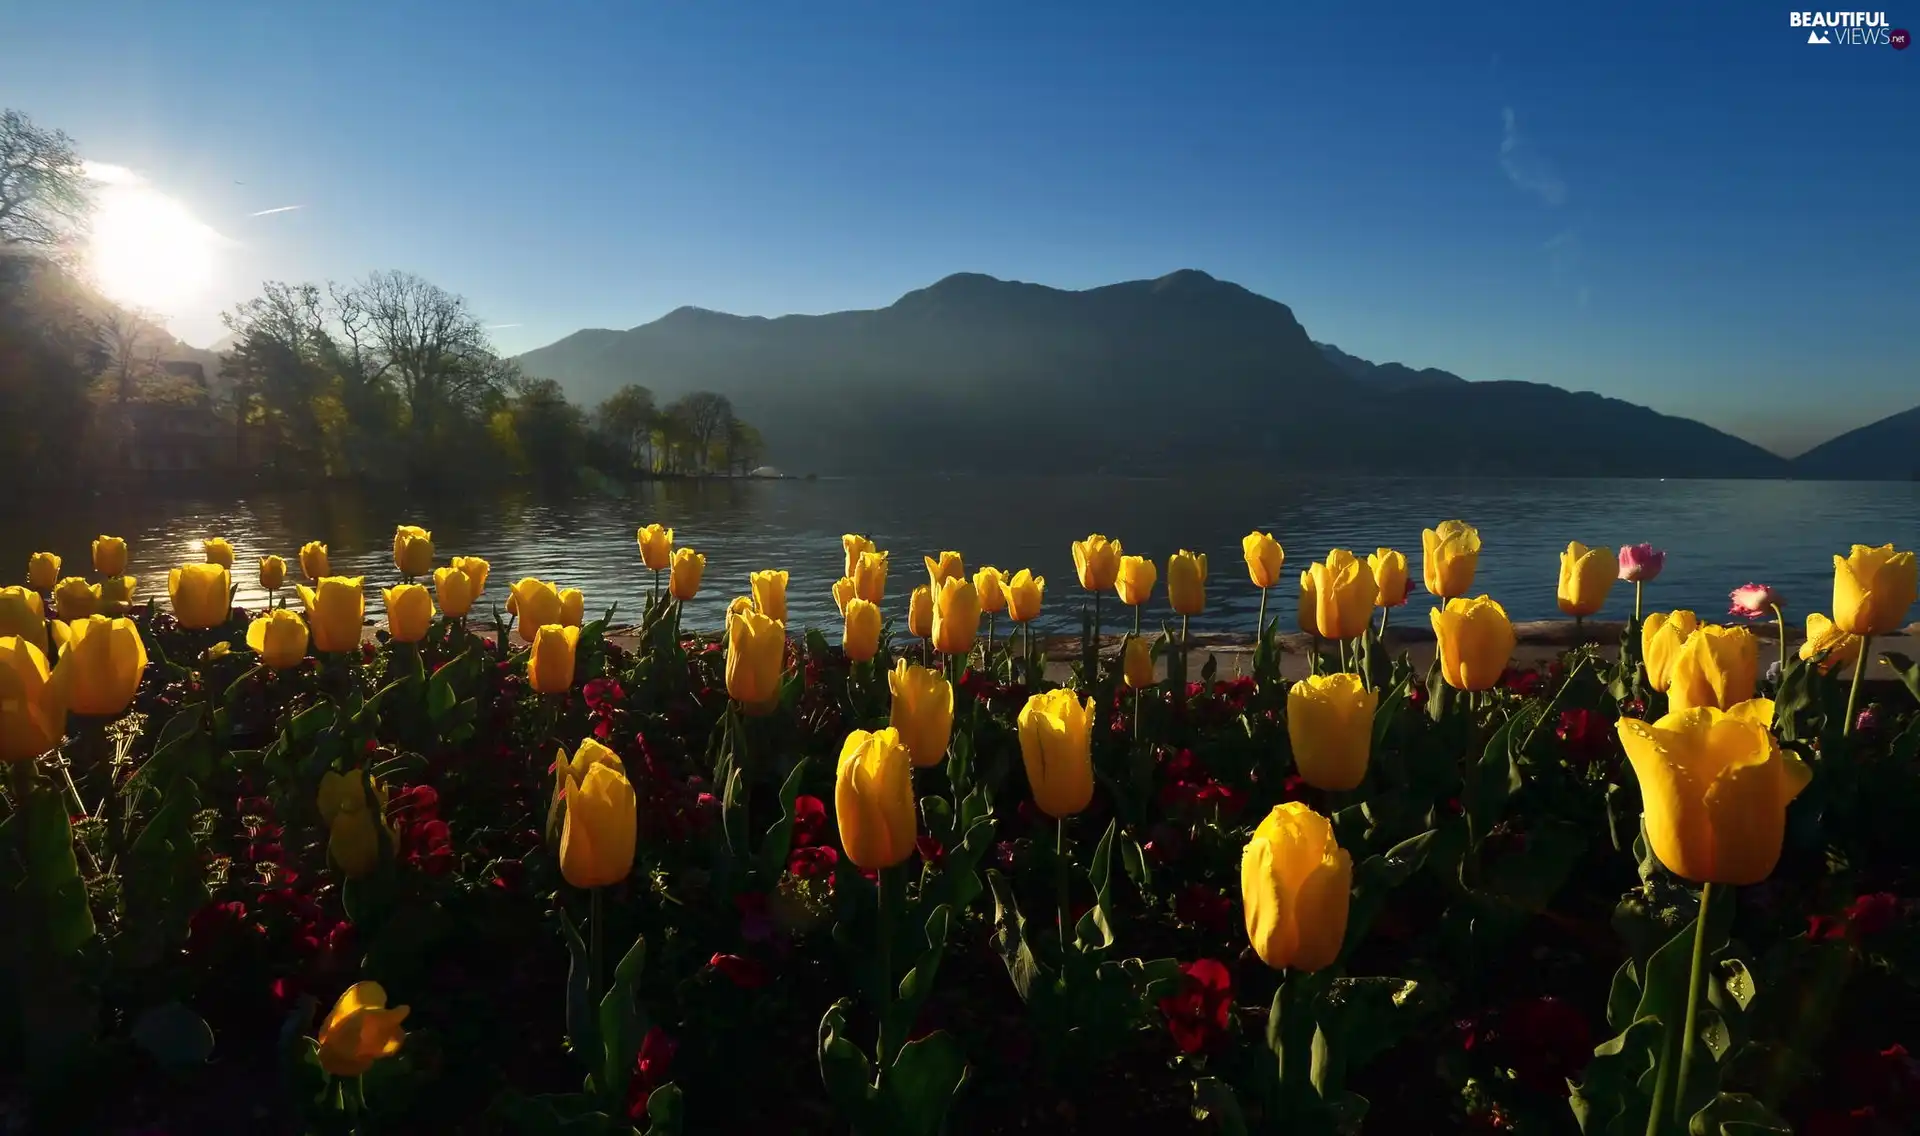 Tulips, Mountains, morning, lake